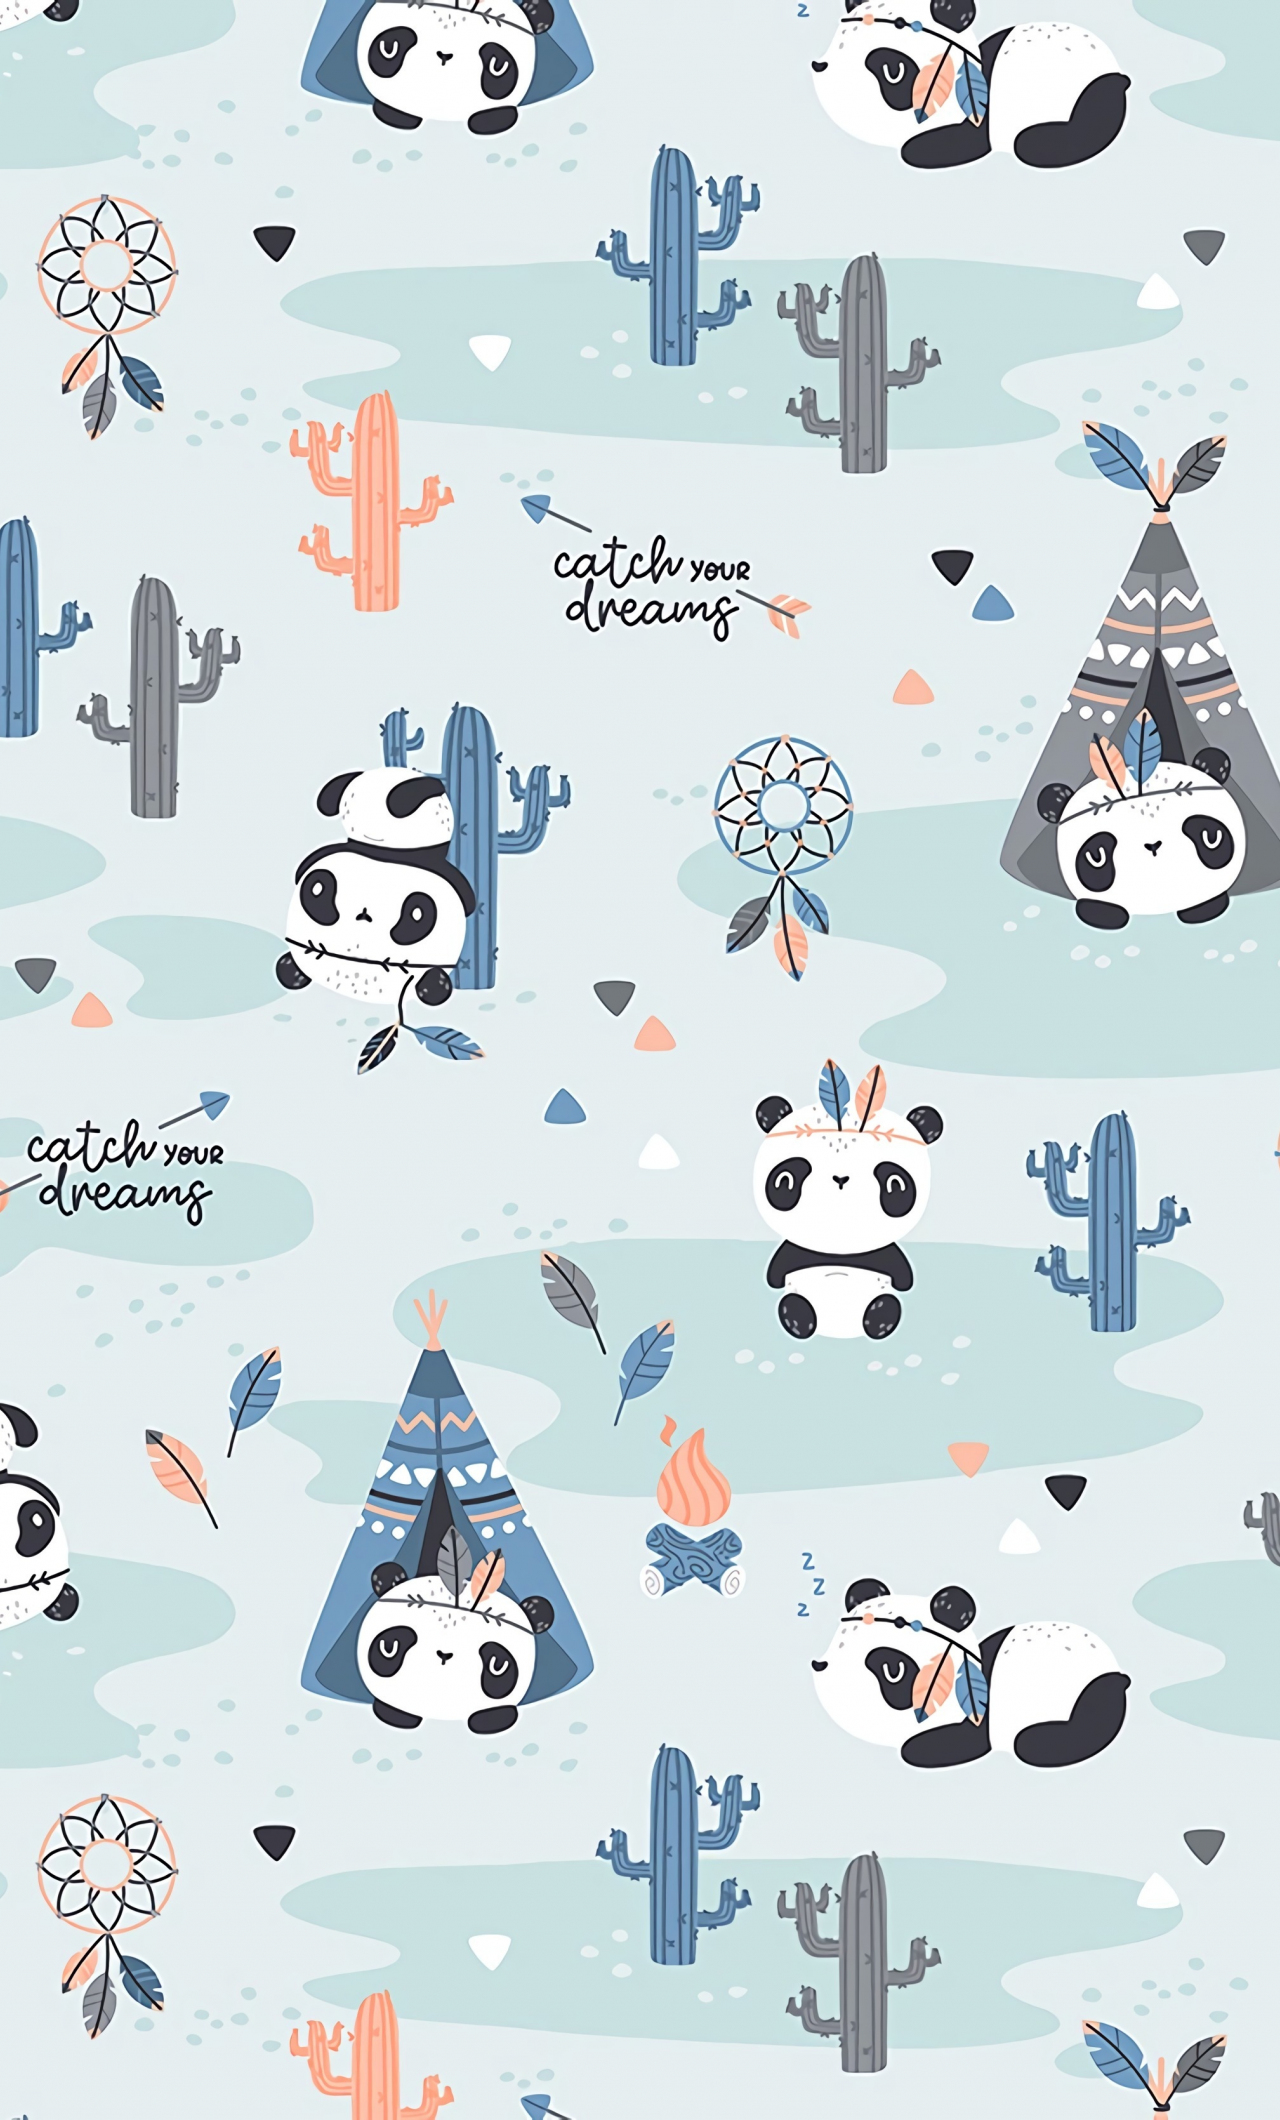 Download 1280x2120 wallpaper pandas